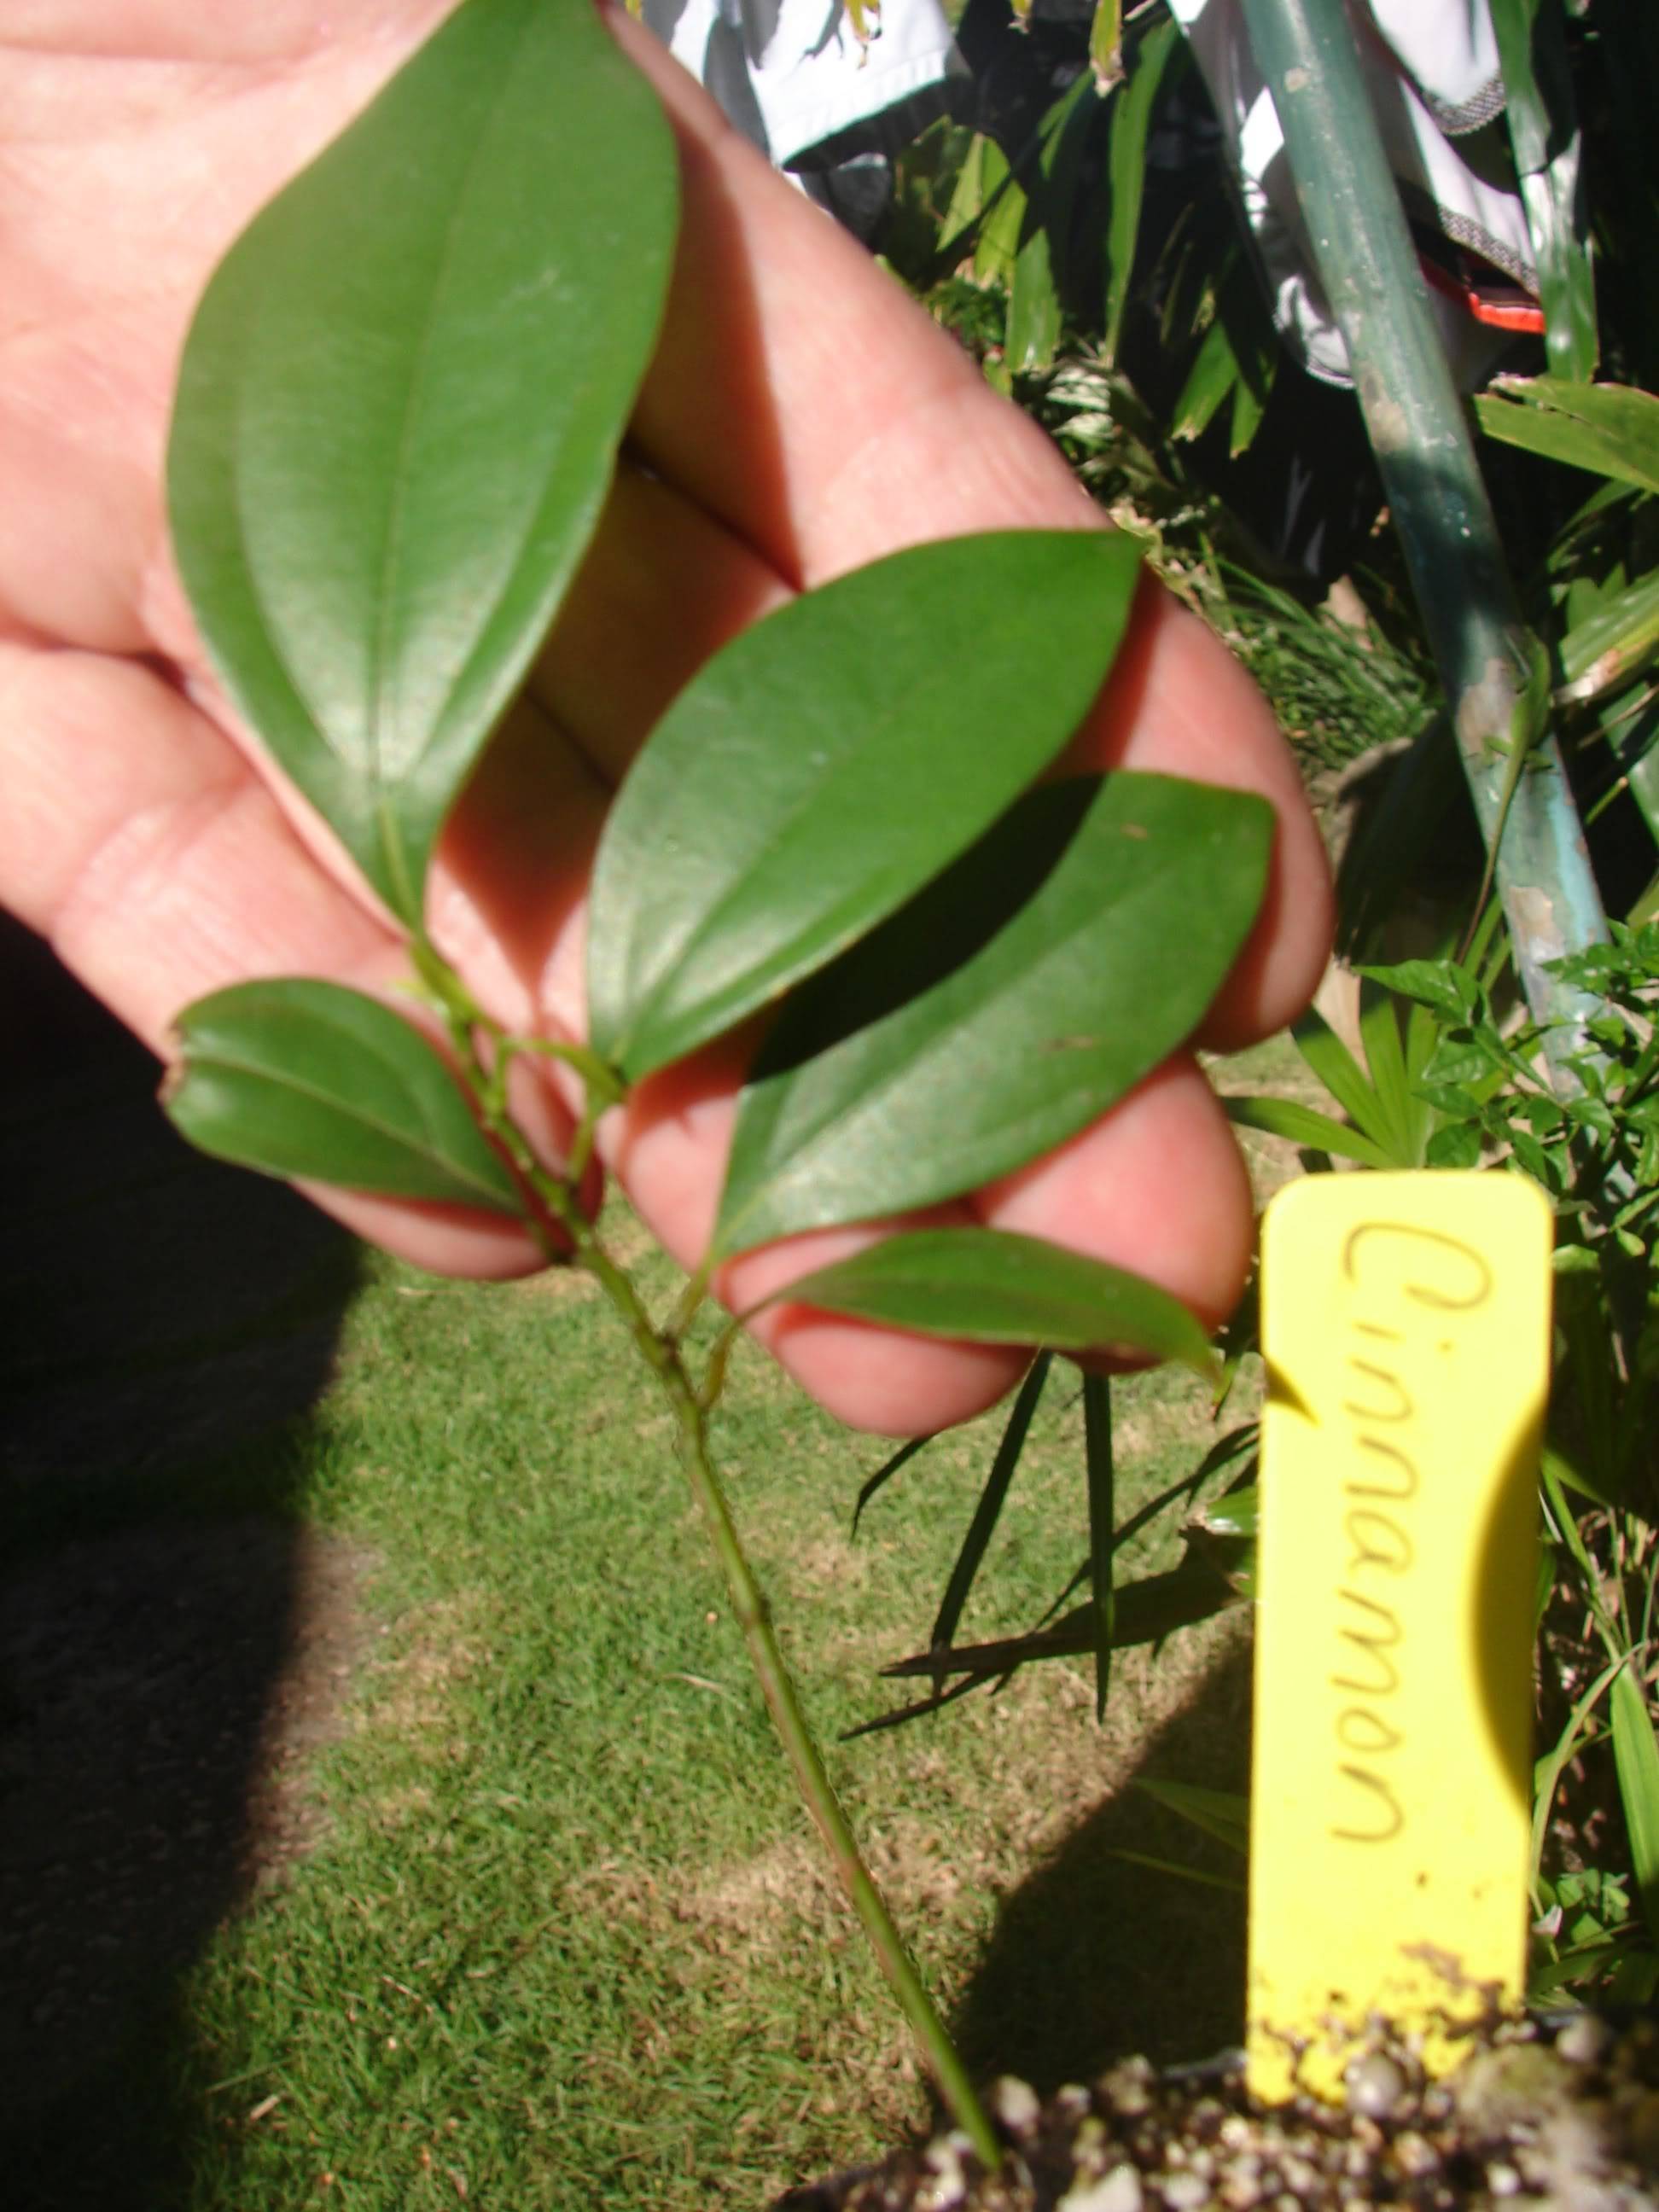 similar Cinnamon tree seedling offered for bid, Cinnamomum aromaticum.